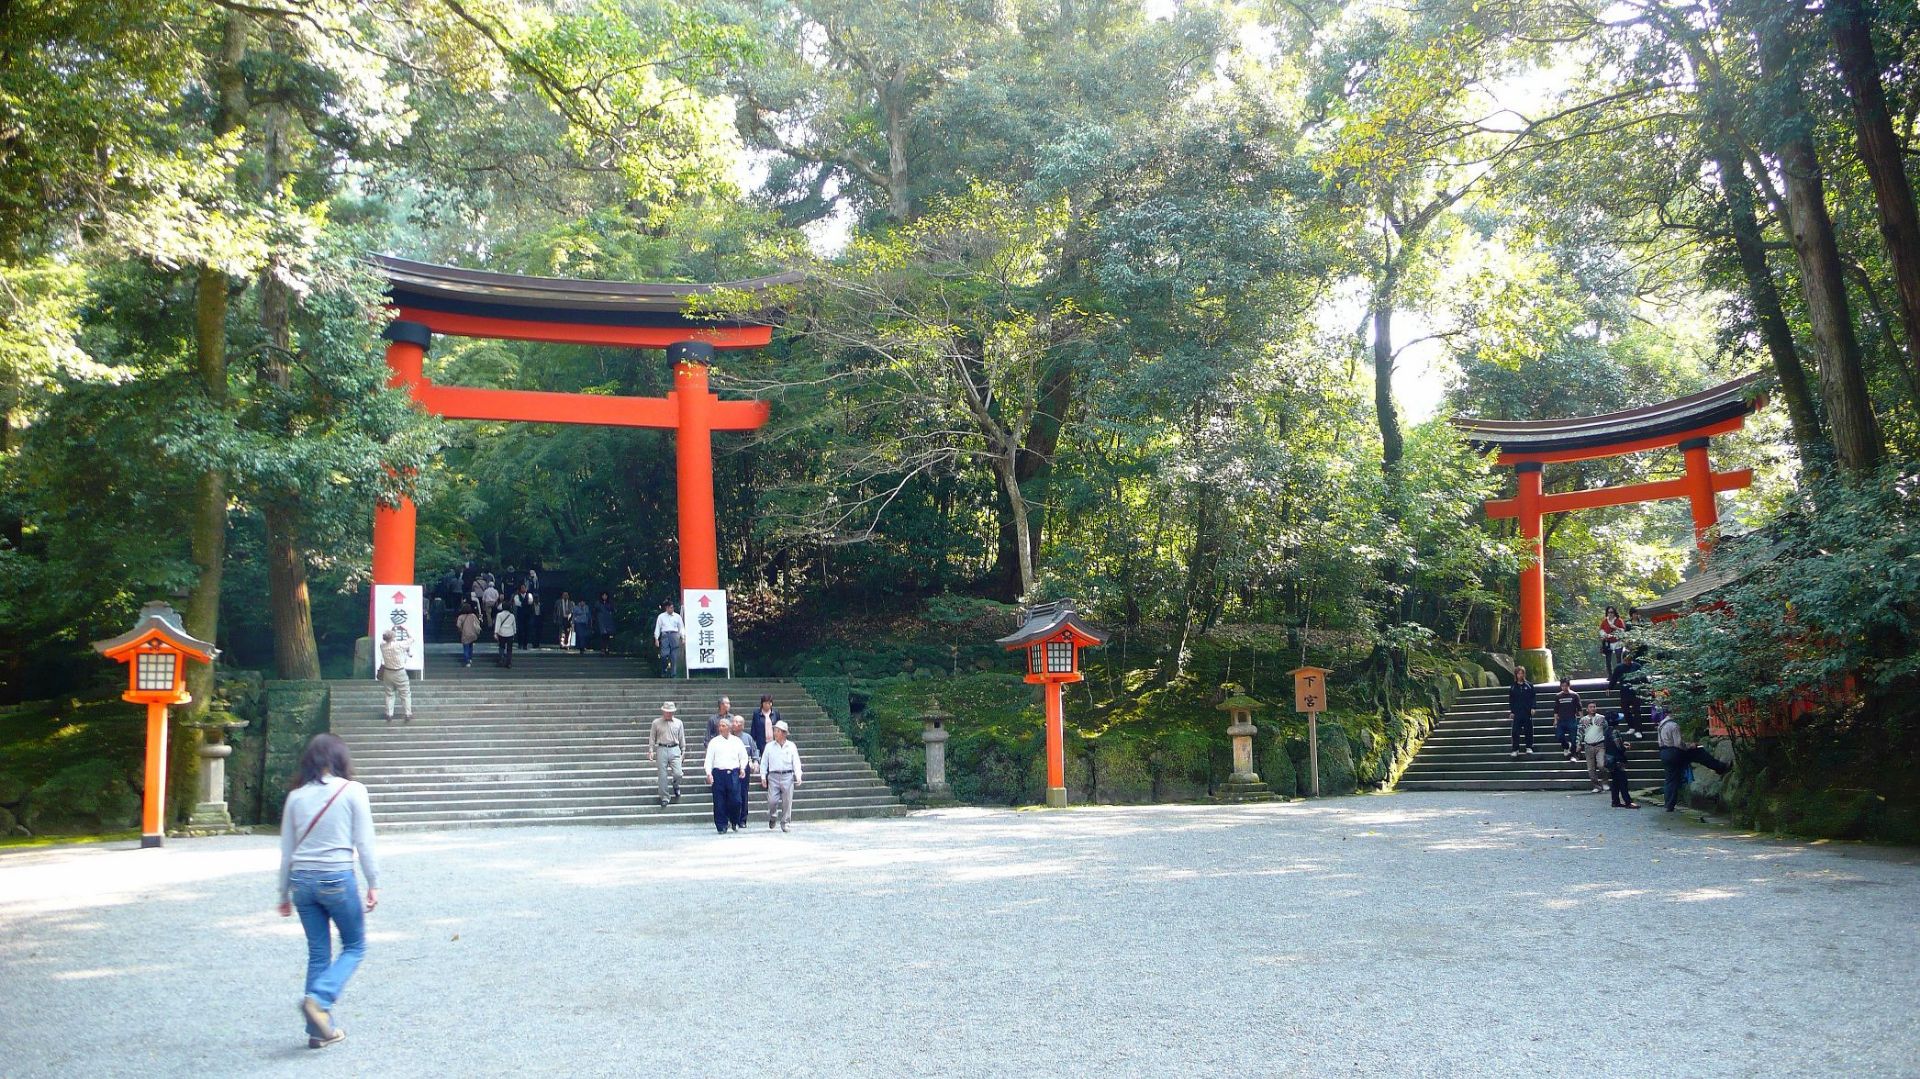 宇佐神庙为日本全国4万多座八幡神社的总山，神宫境内被指定为国家历史遗迹，除作为国家的大殿以外还收藏了